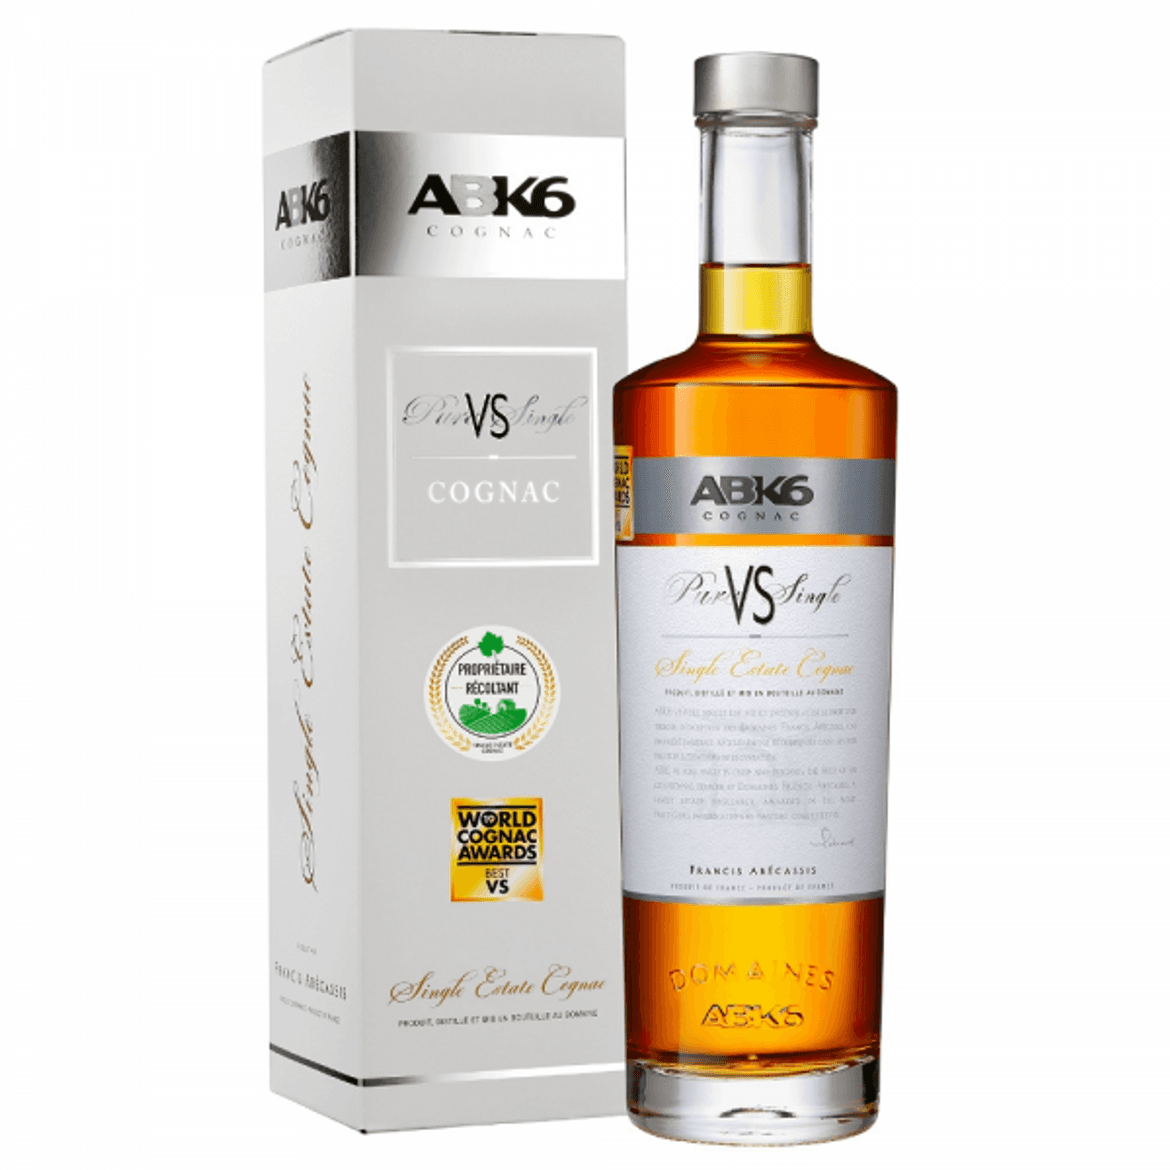 ABK6 VS Premium cognac 40%